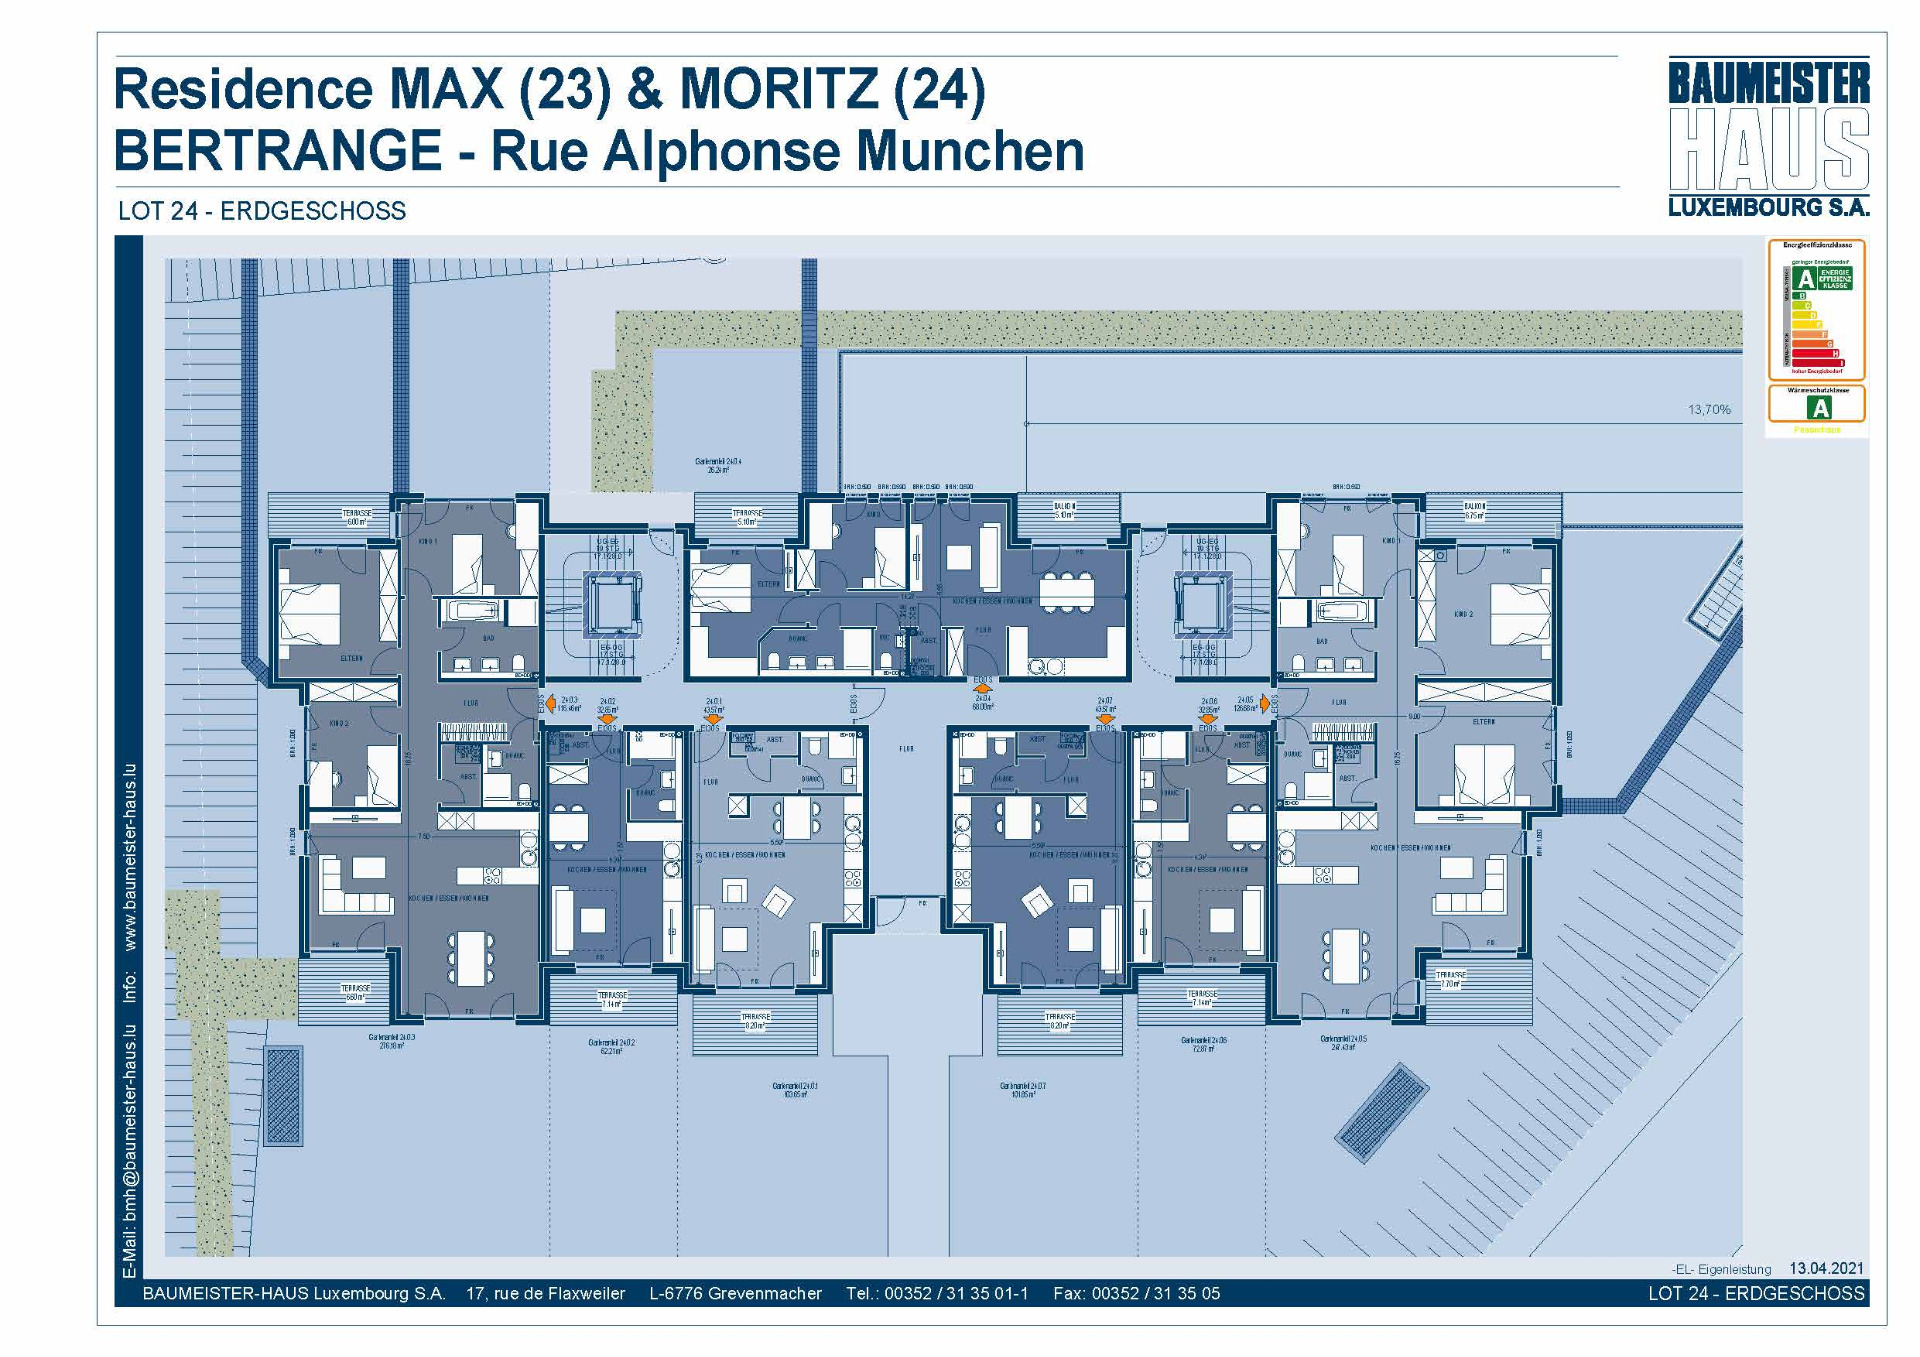 Residenz Moritz 24.0.6